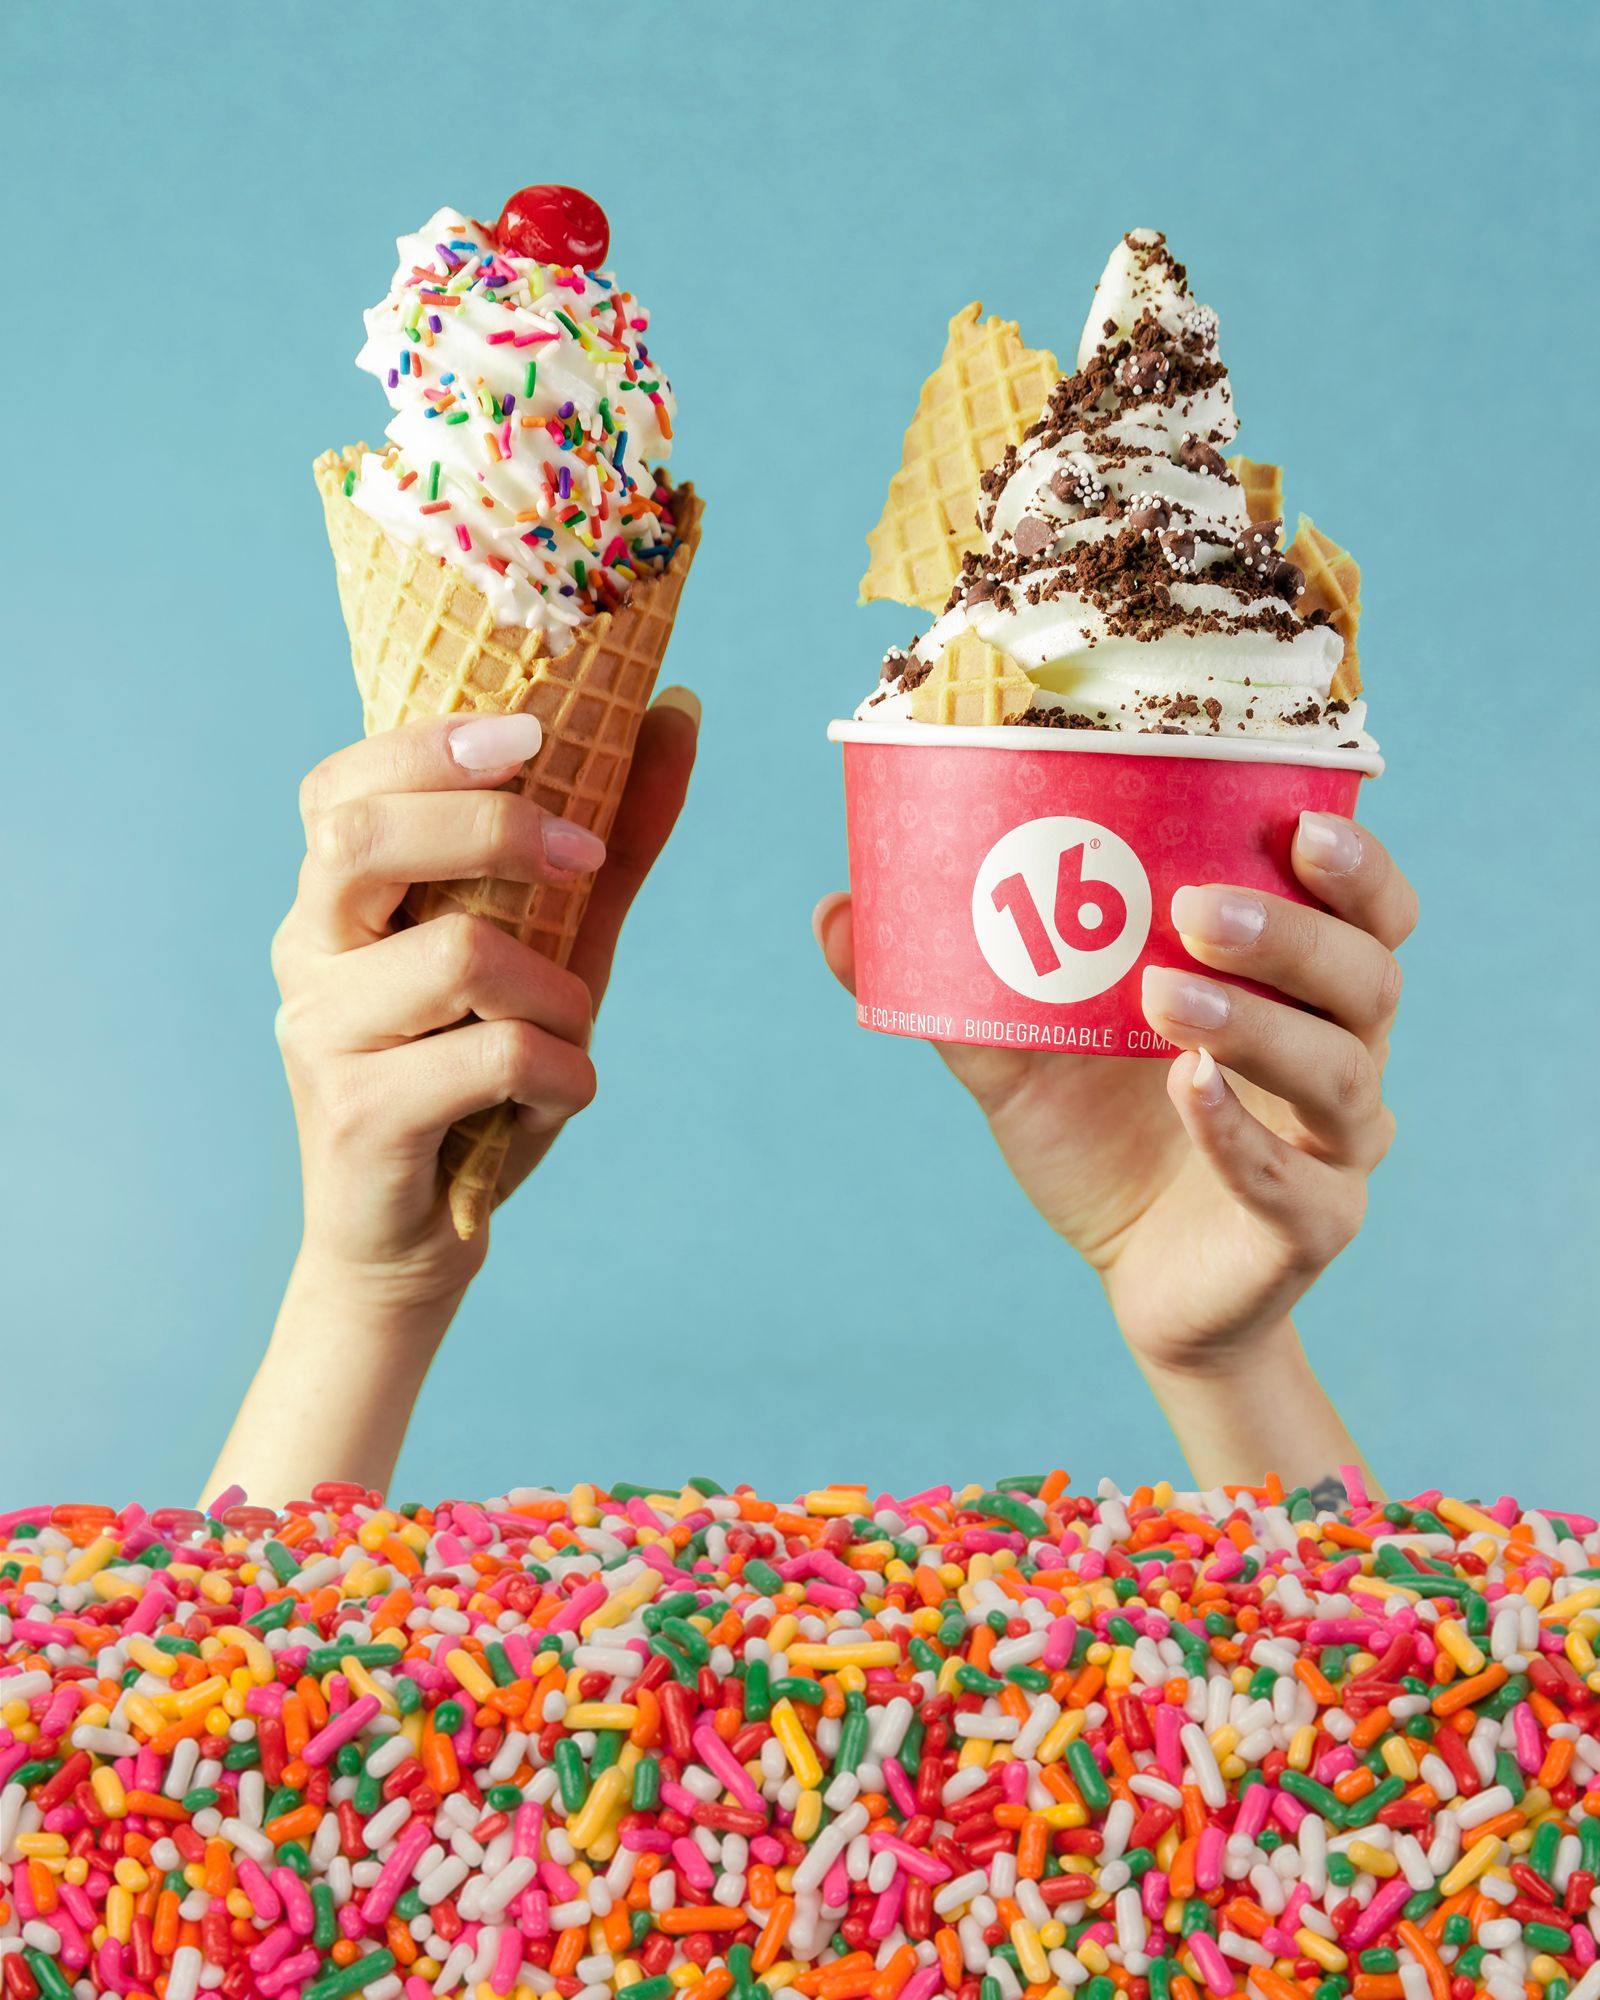 Célébrez la Journée nationale de la crème glacée avec 16 poignées !